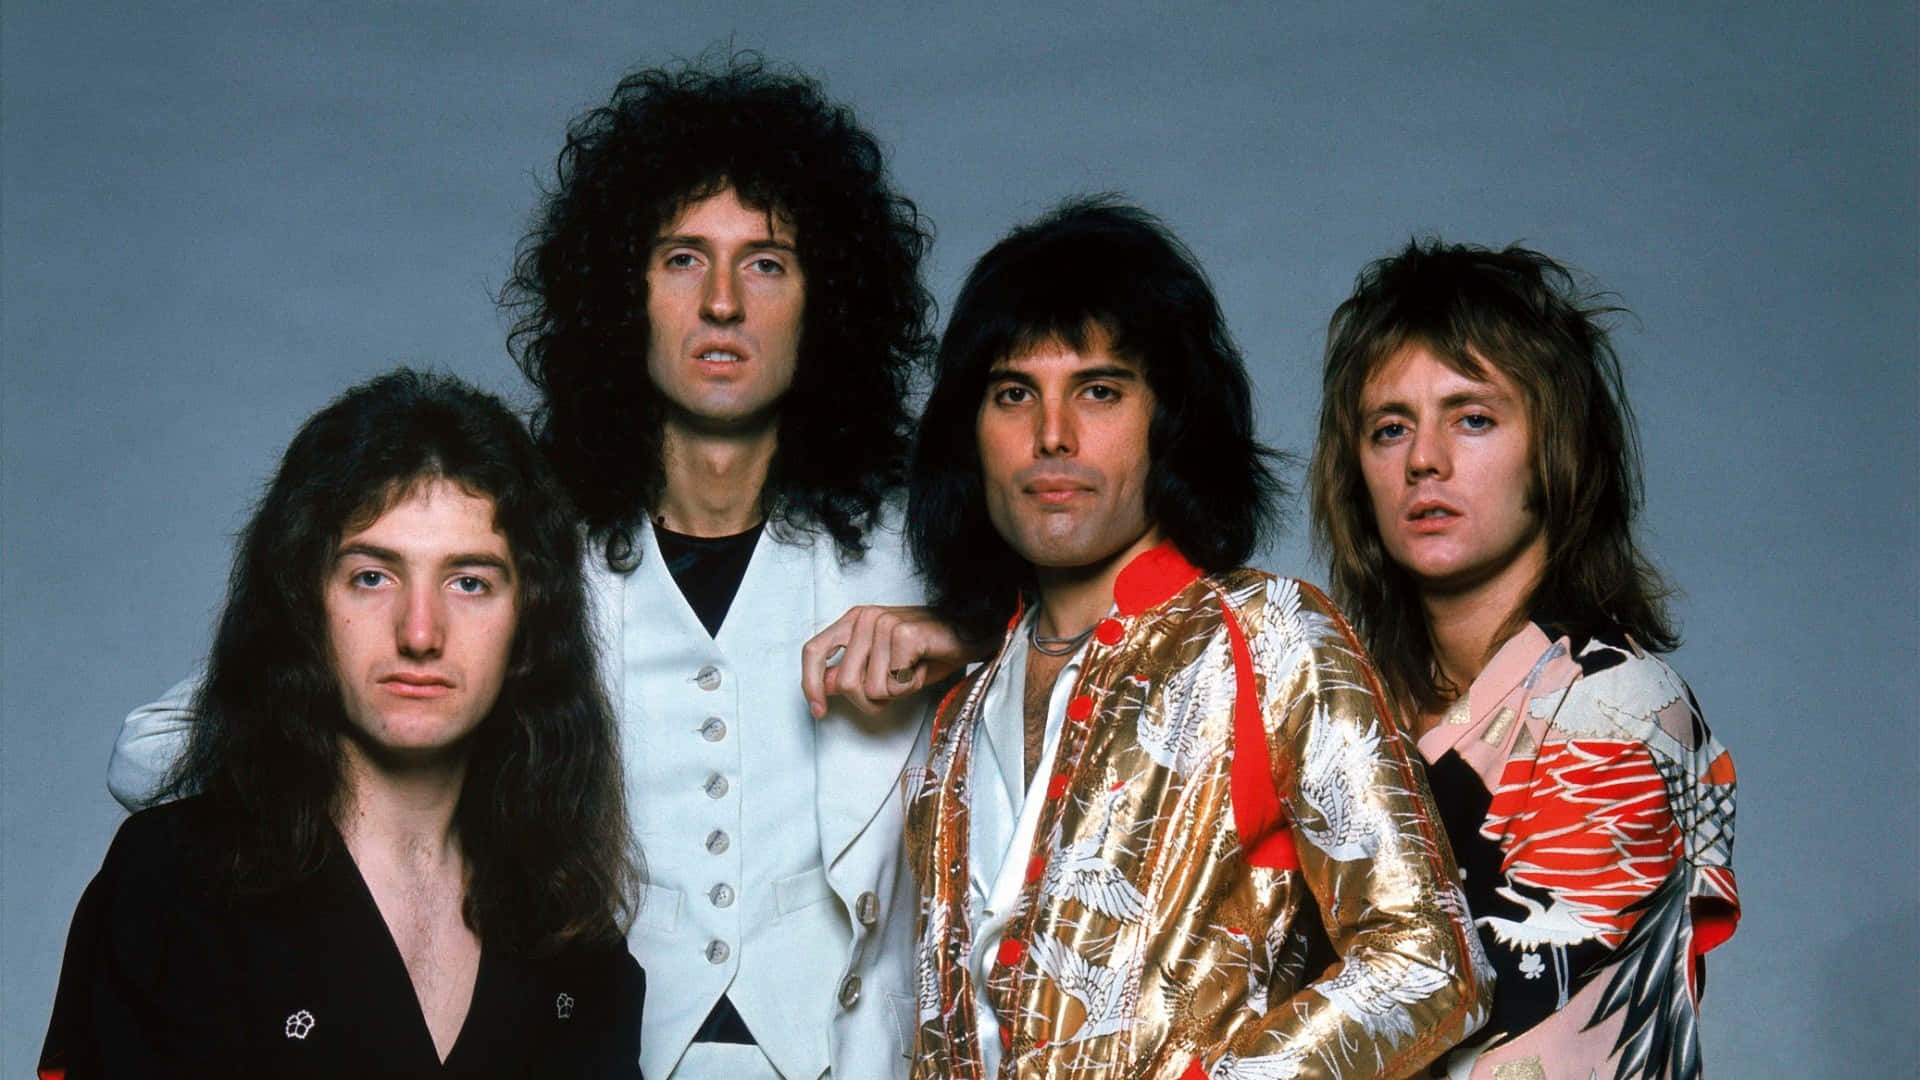 Dielegendäre Britische Rockband Queen Rockt Die Welt Seit Ihrer Gründung In Den Frühen 70ern.